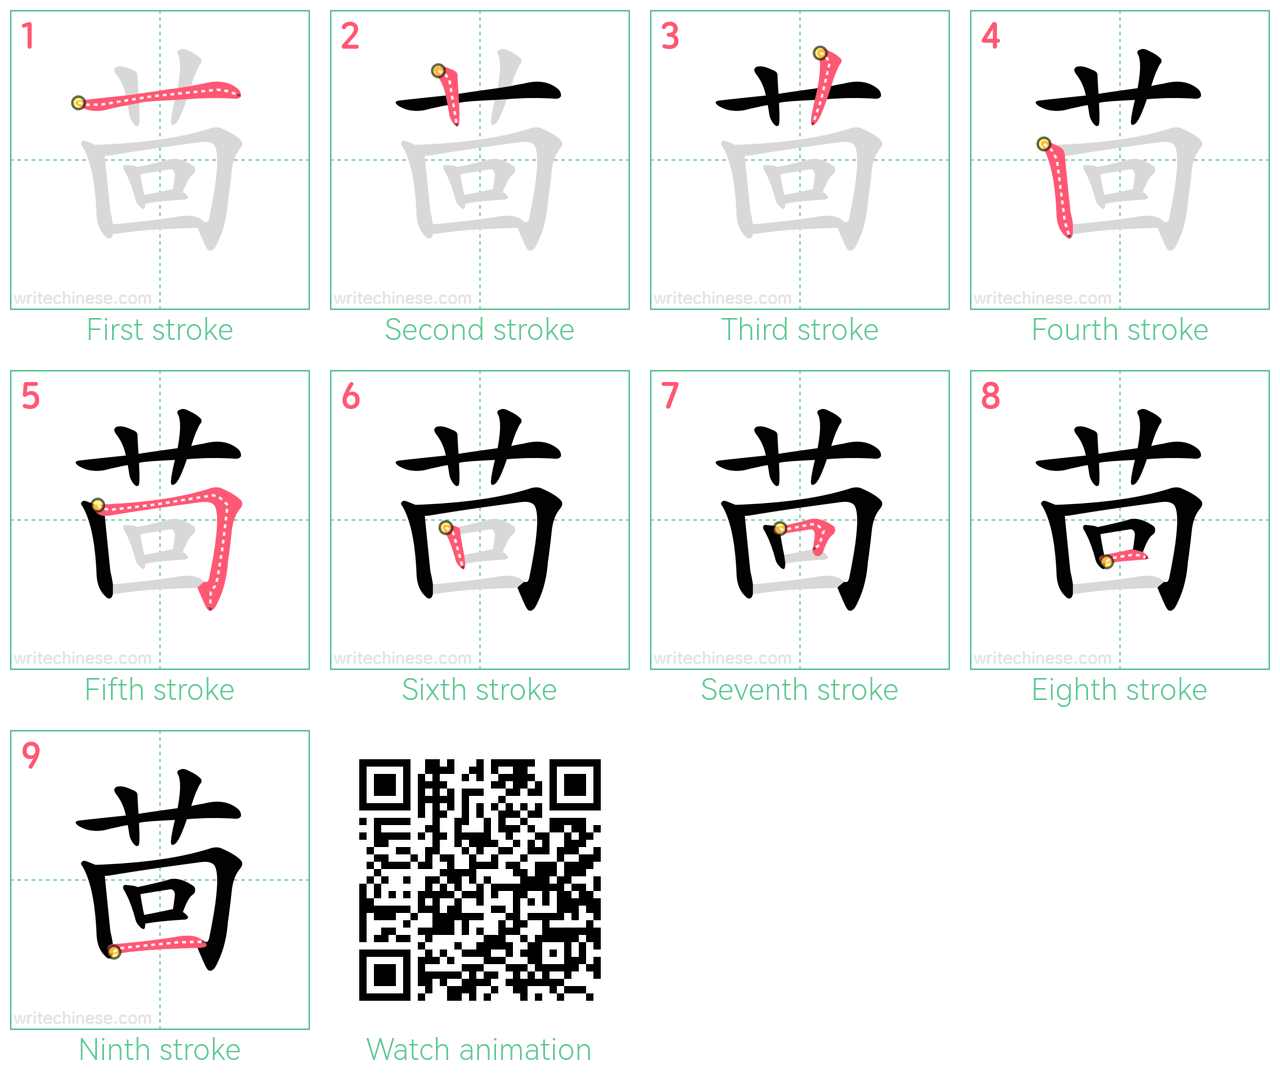 茴 step-by-step stroke order diagrams